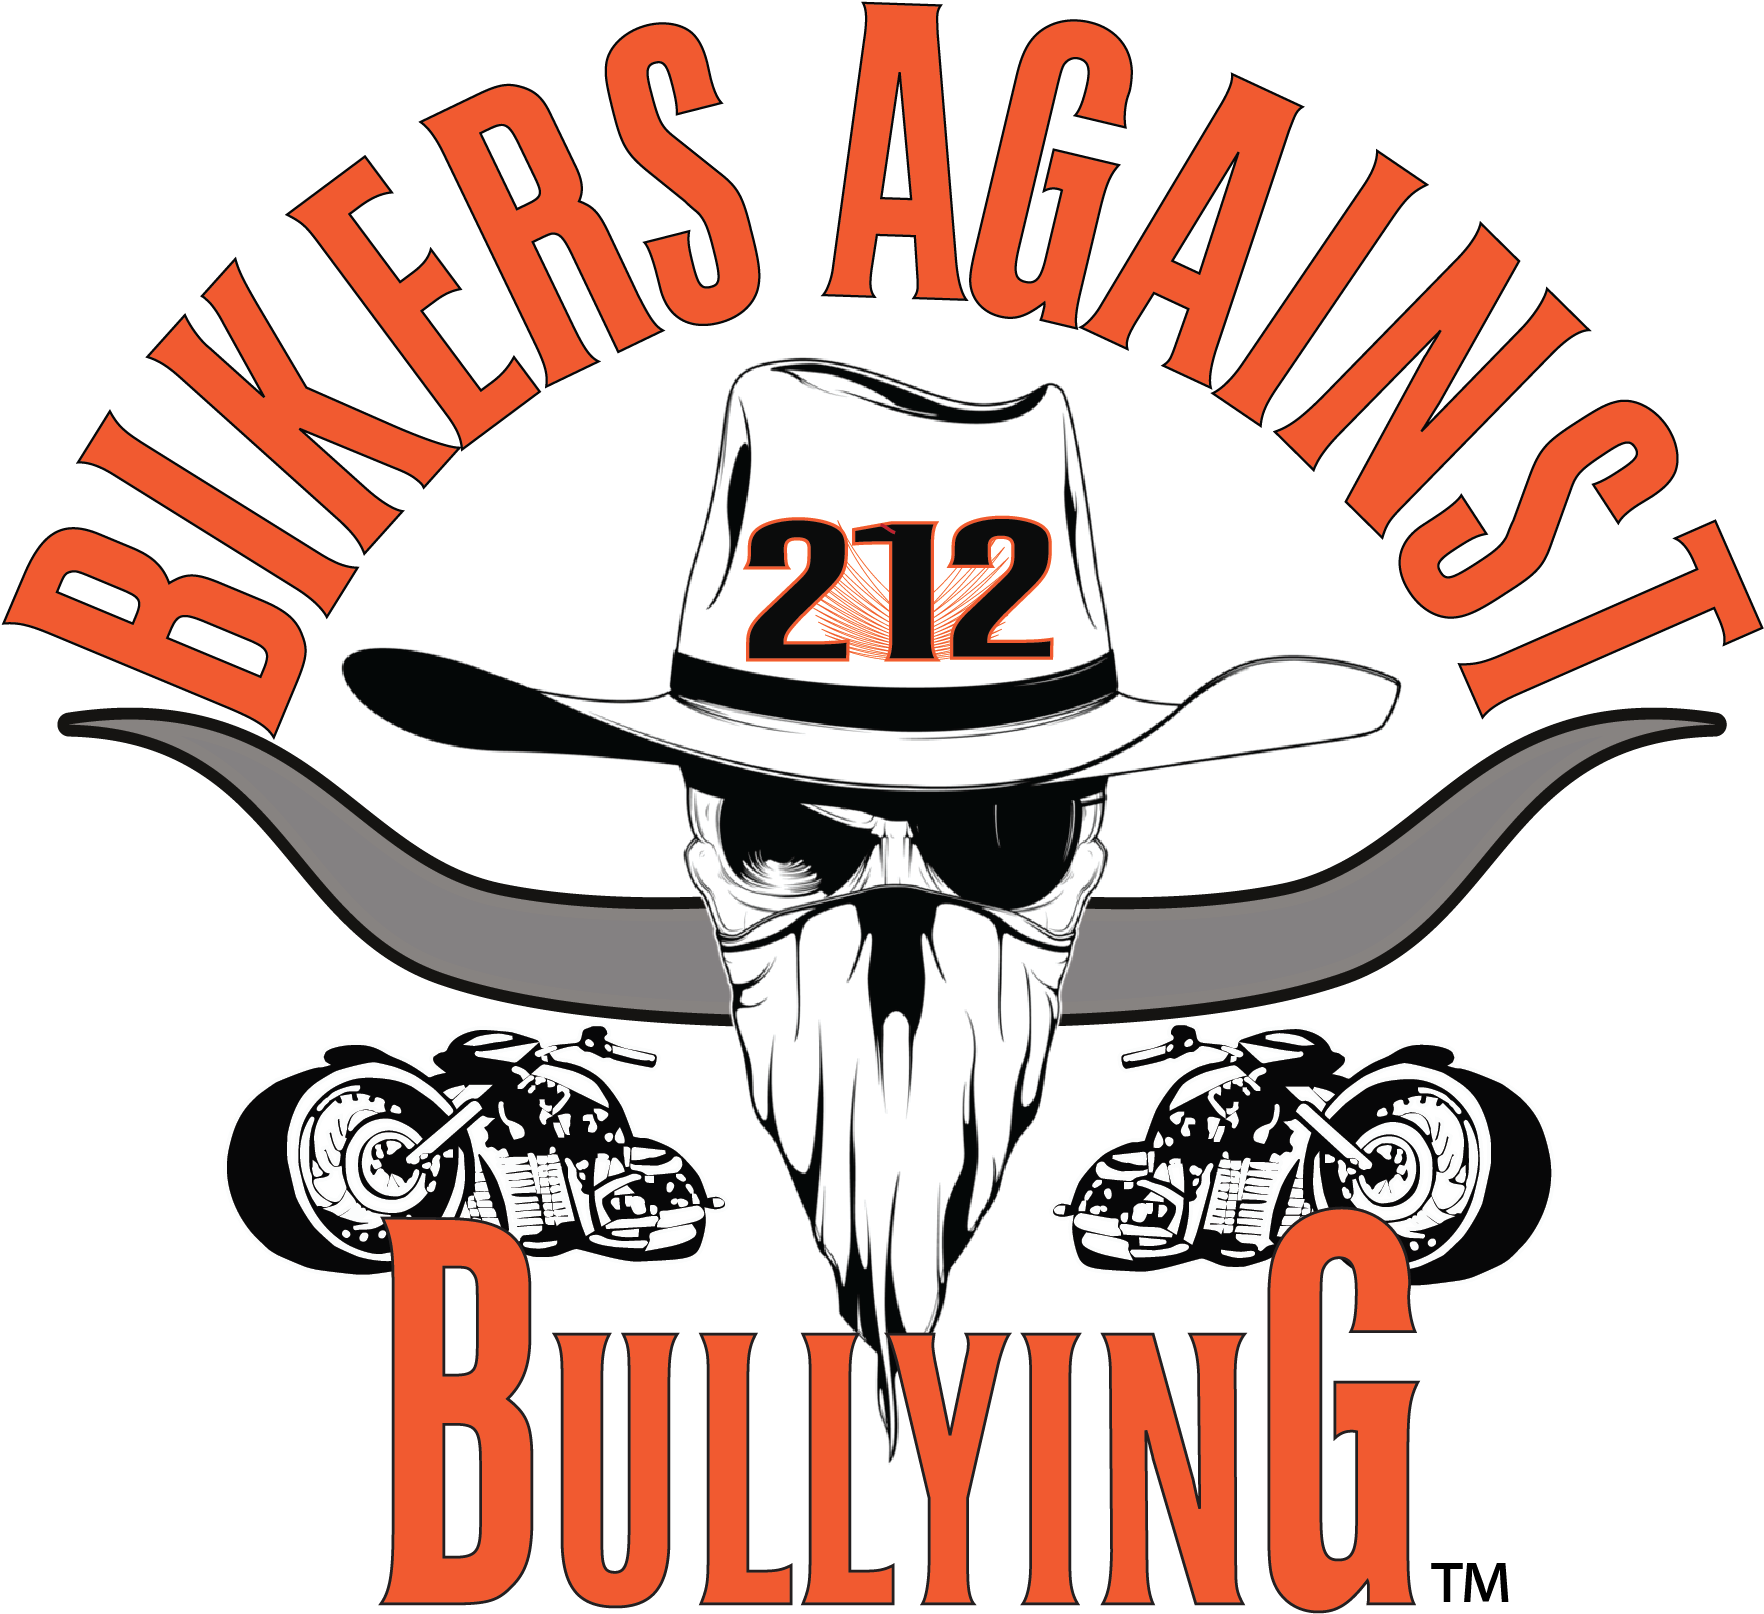 Bikers Against Bullying - Bikers Against Bullying (1972x1850)